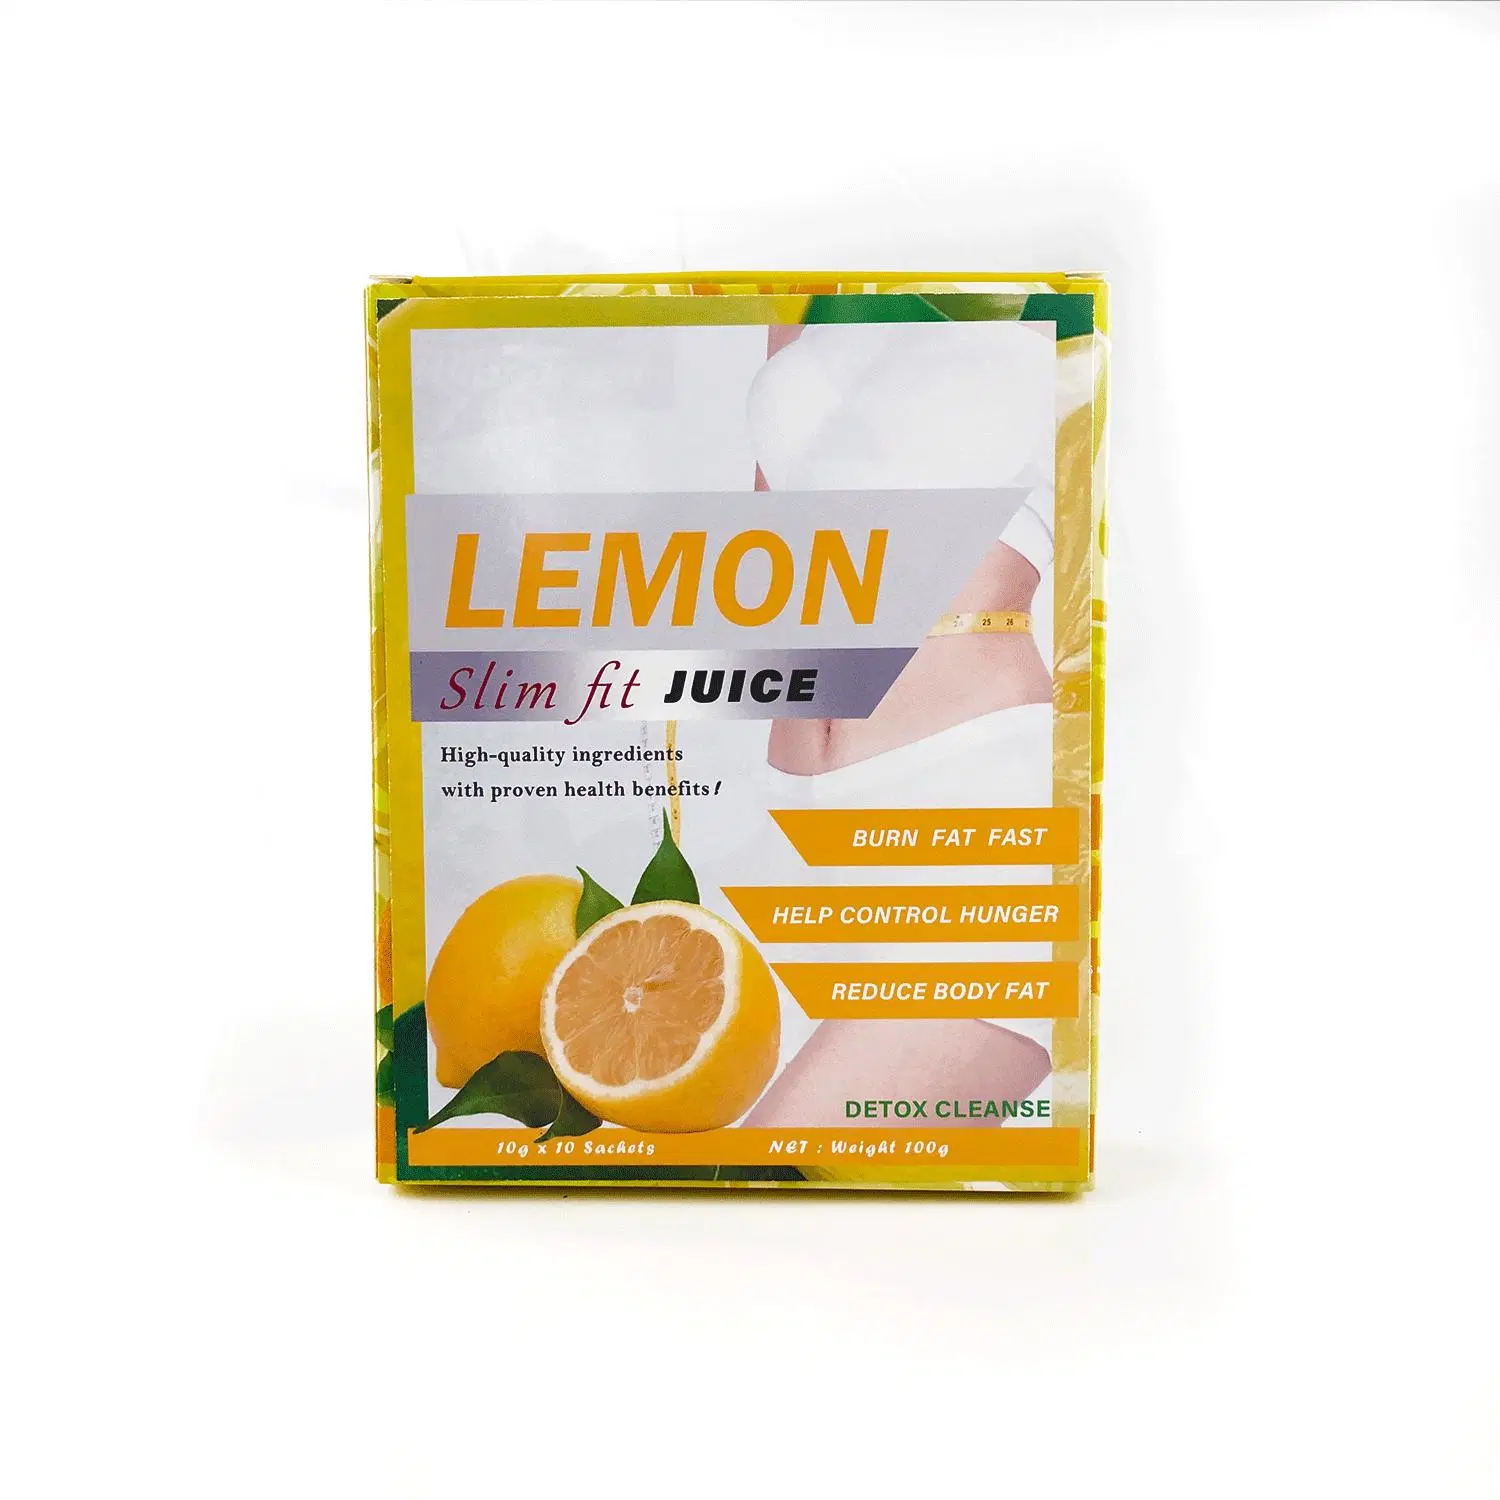 La pérdida de peso fruta Kiwi Limón naranja de la belleza de las toxinas del cuerpo de jugo adelgazante para moldear el cuerpo y mantenerse en forma